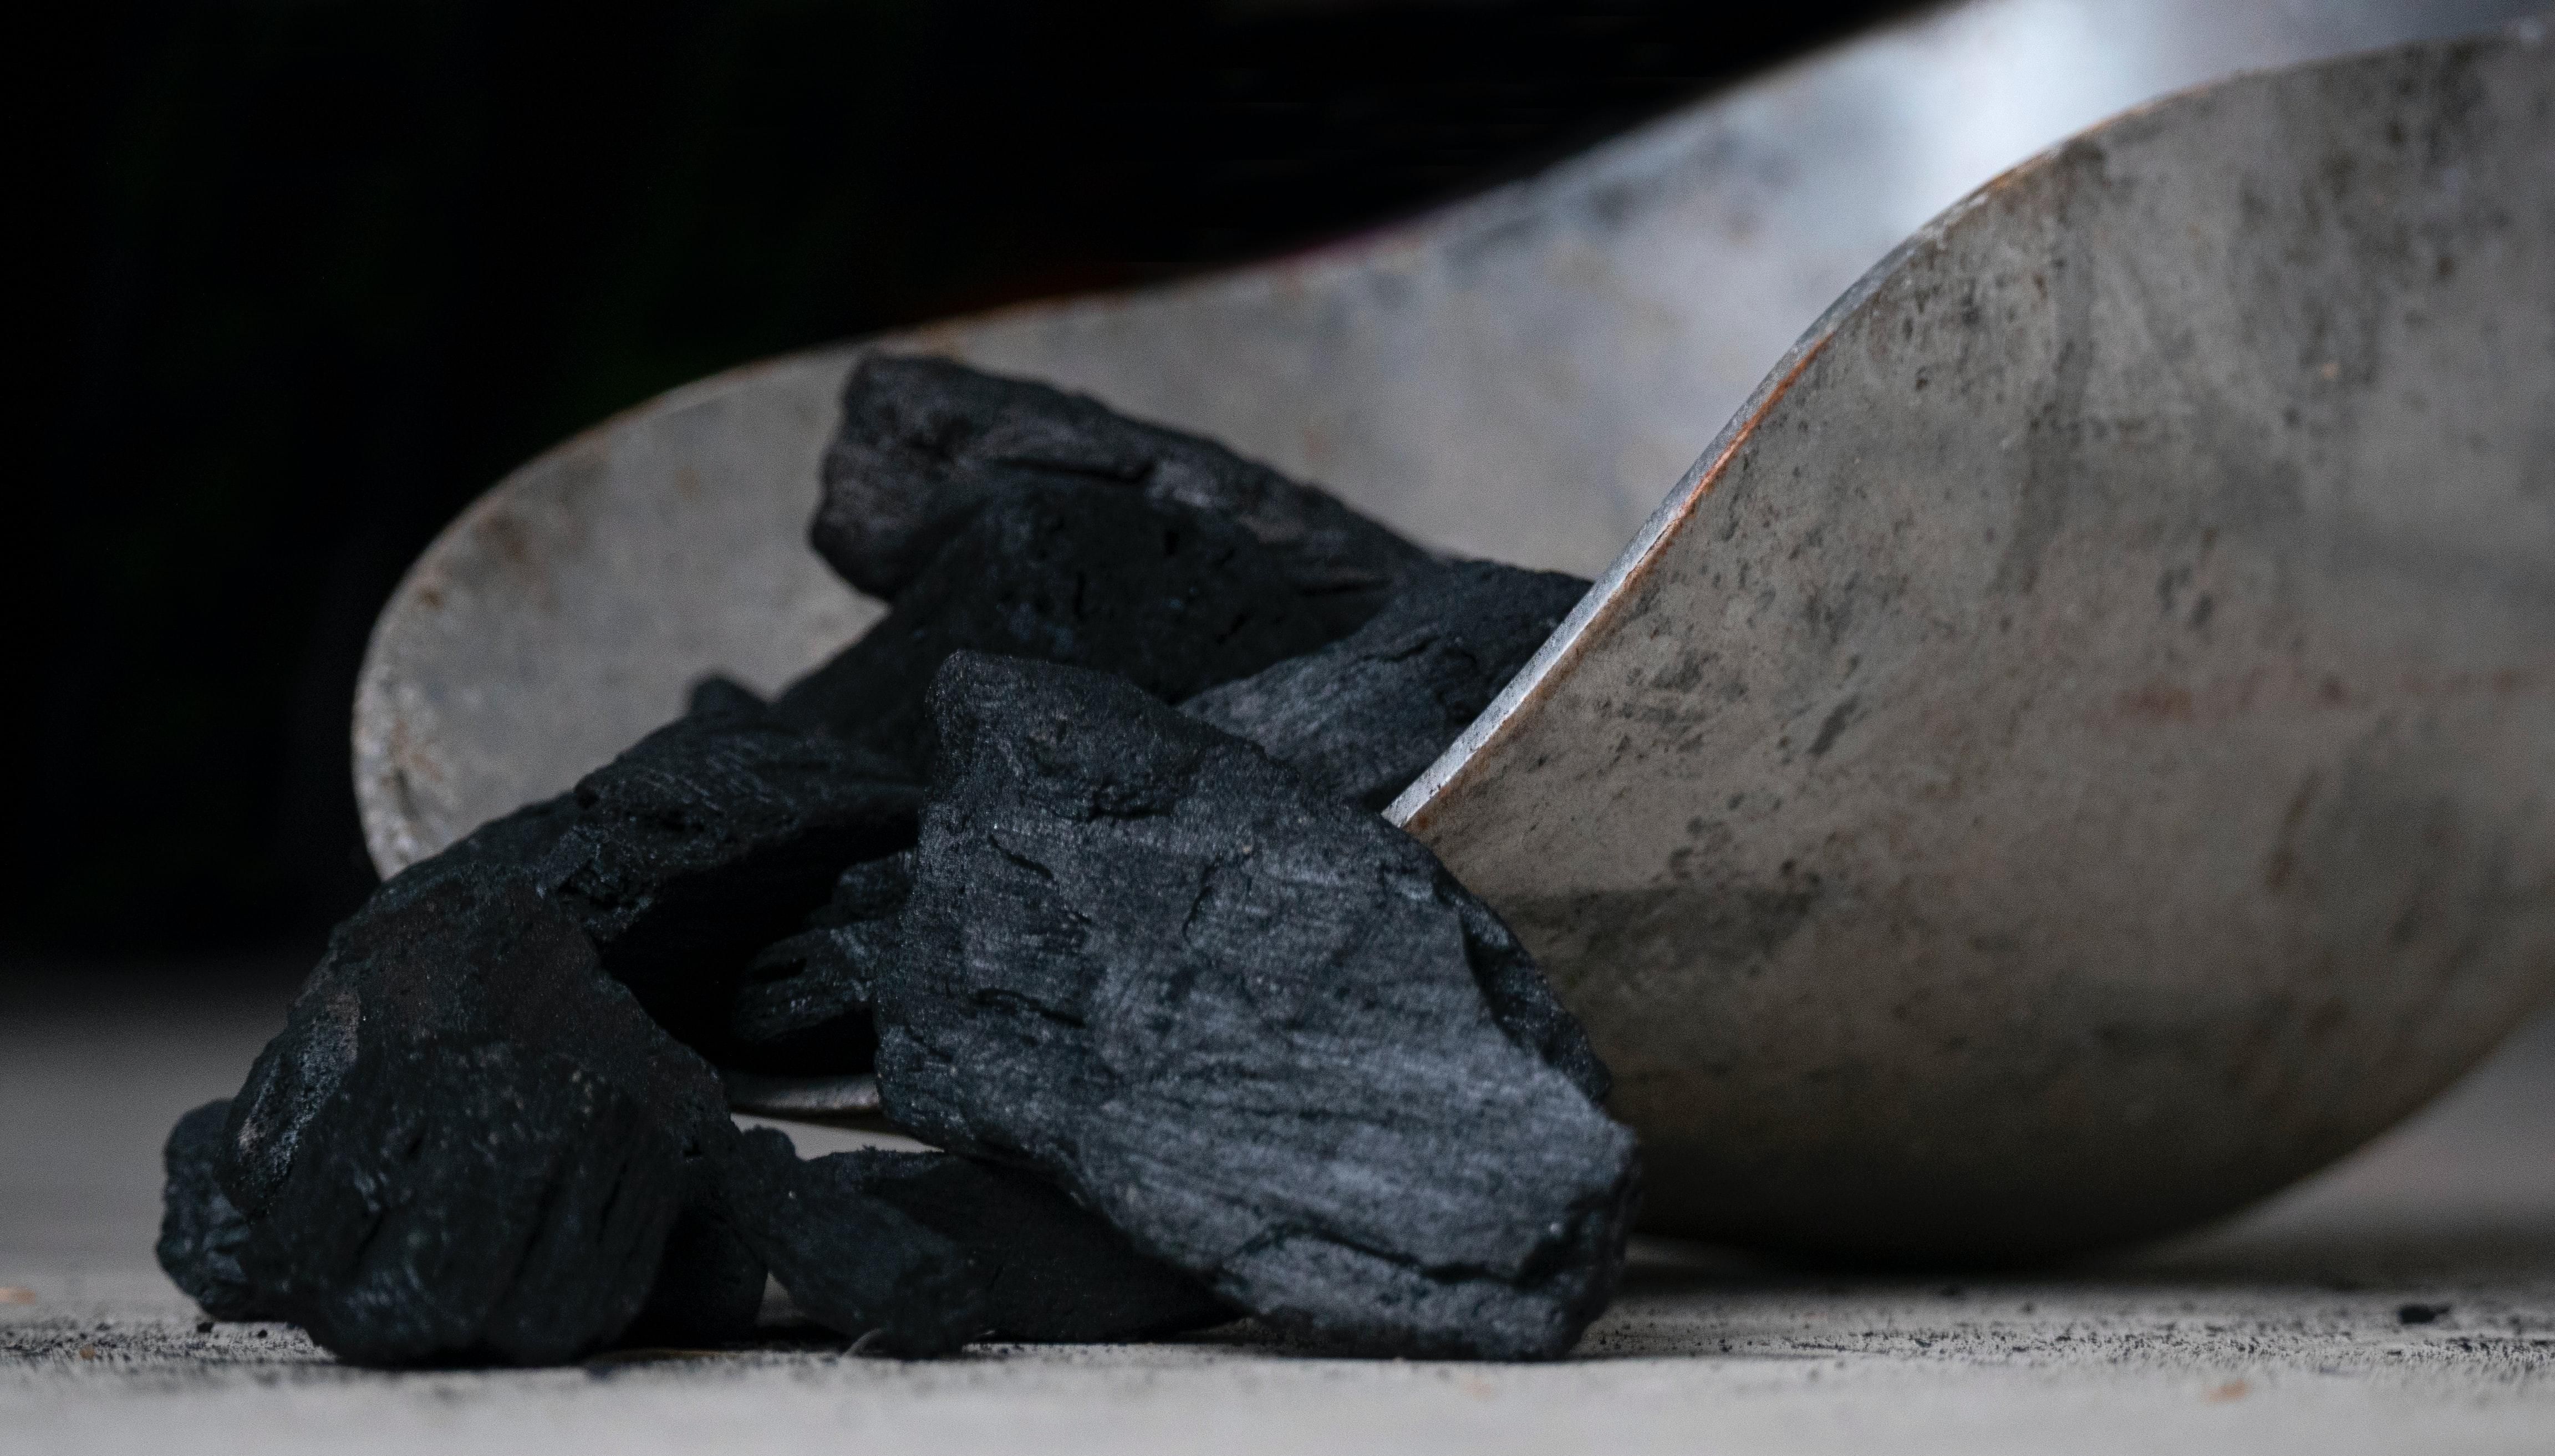 Запасы угля на складах ТЭС упали ниже 500 тысяч тонн: данные Минэнерго - Экономические новости Украины - Экономика